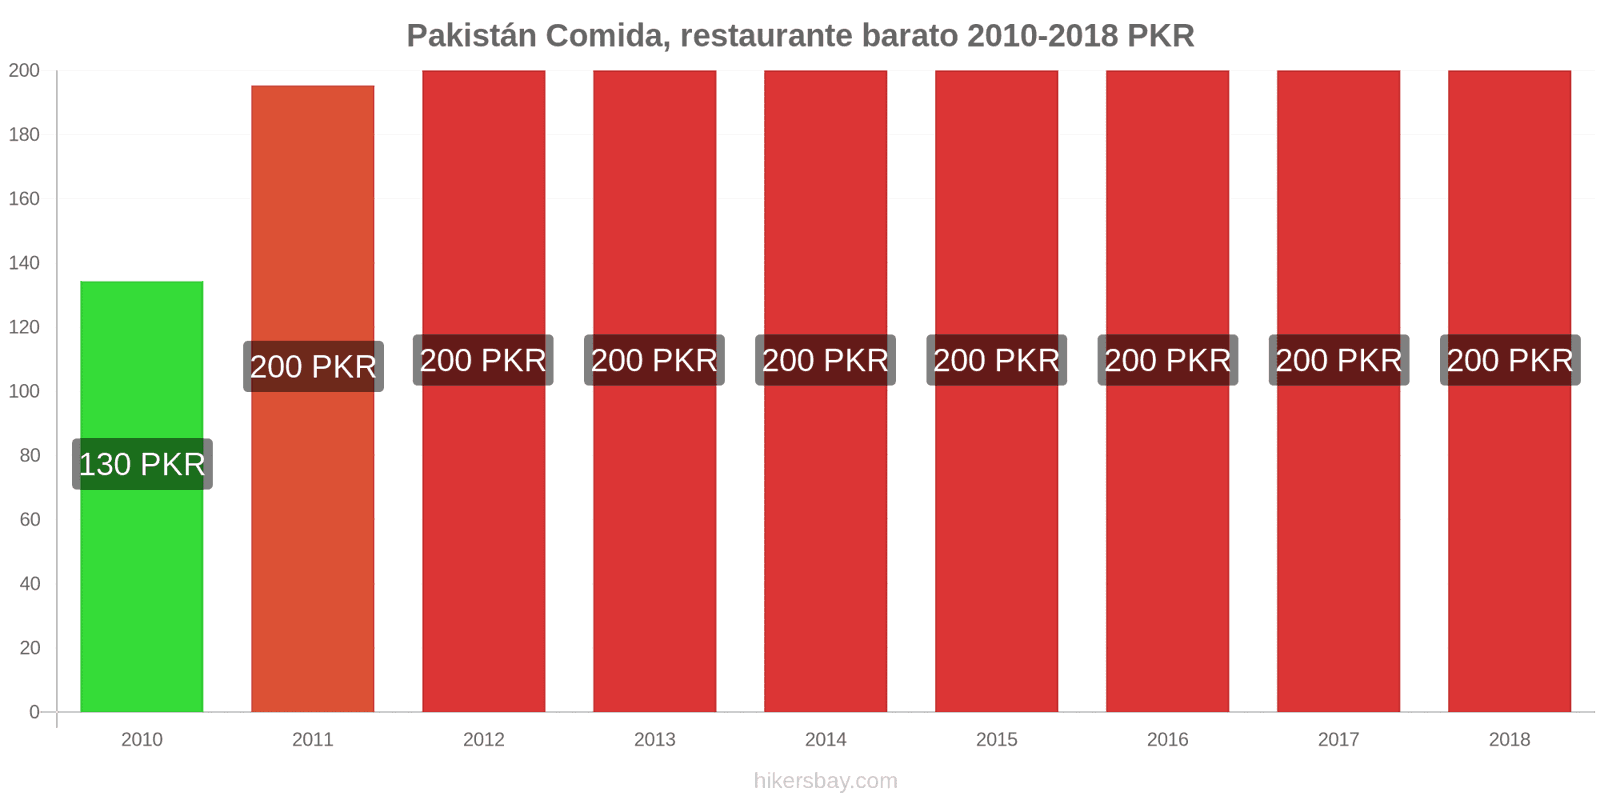 Pakistán cambios de precios Comida en un restaurante económico hikersbay.com